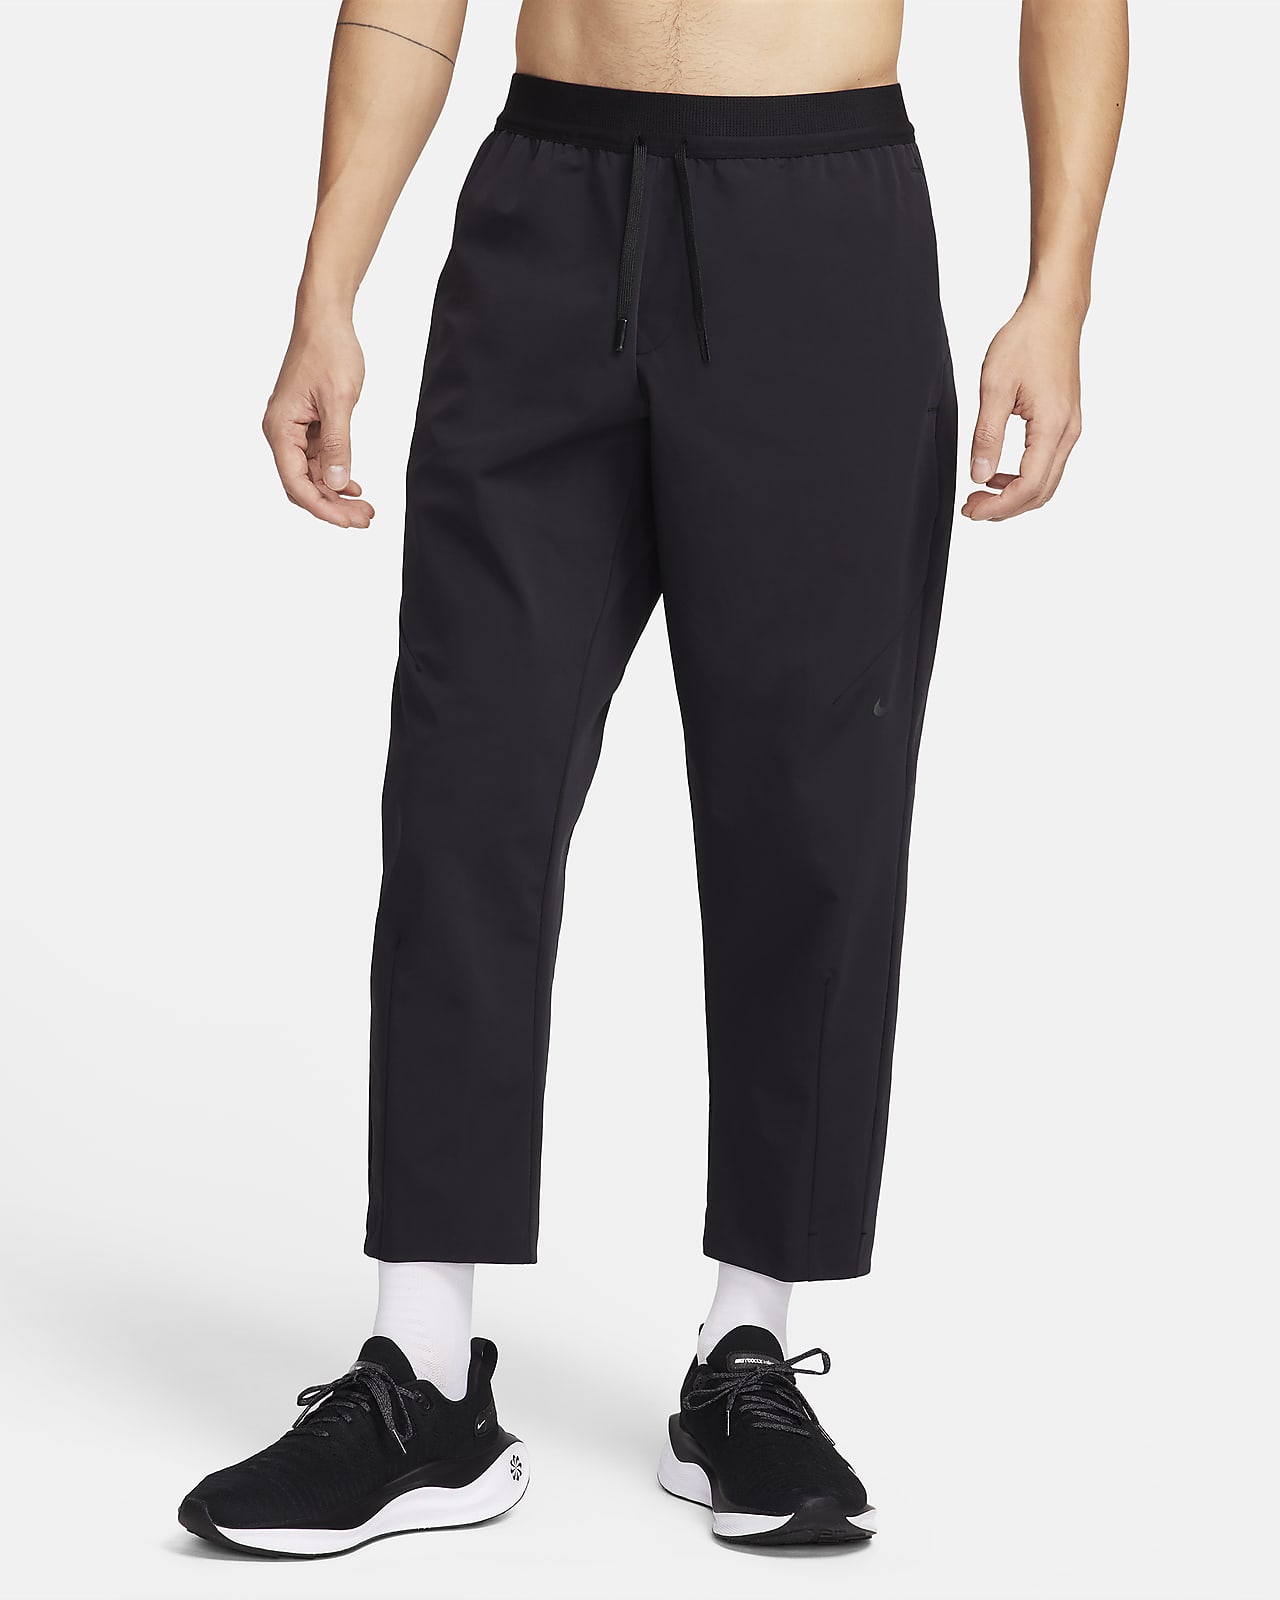 Nike A.P.S. Pantalons Dri-FIT versàtils i de teixit Woven - Home